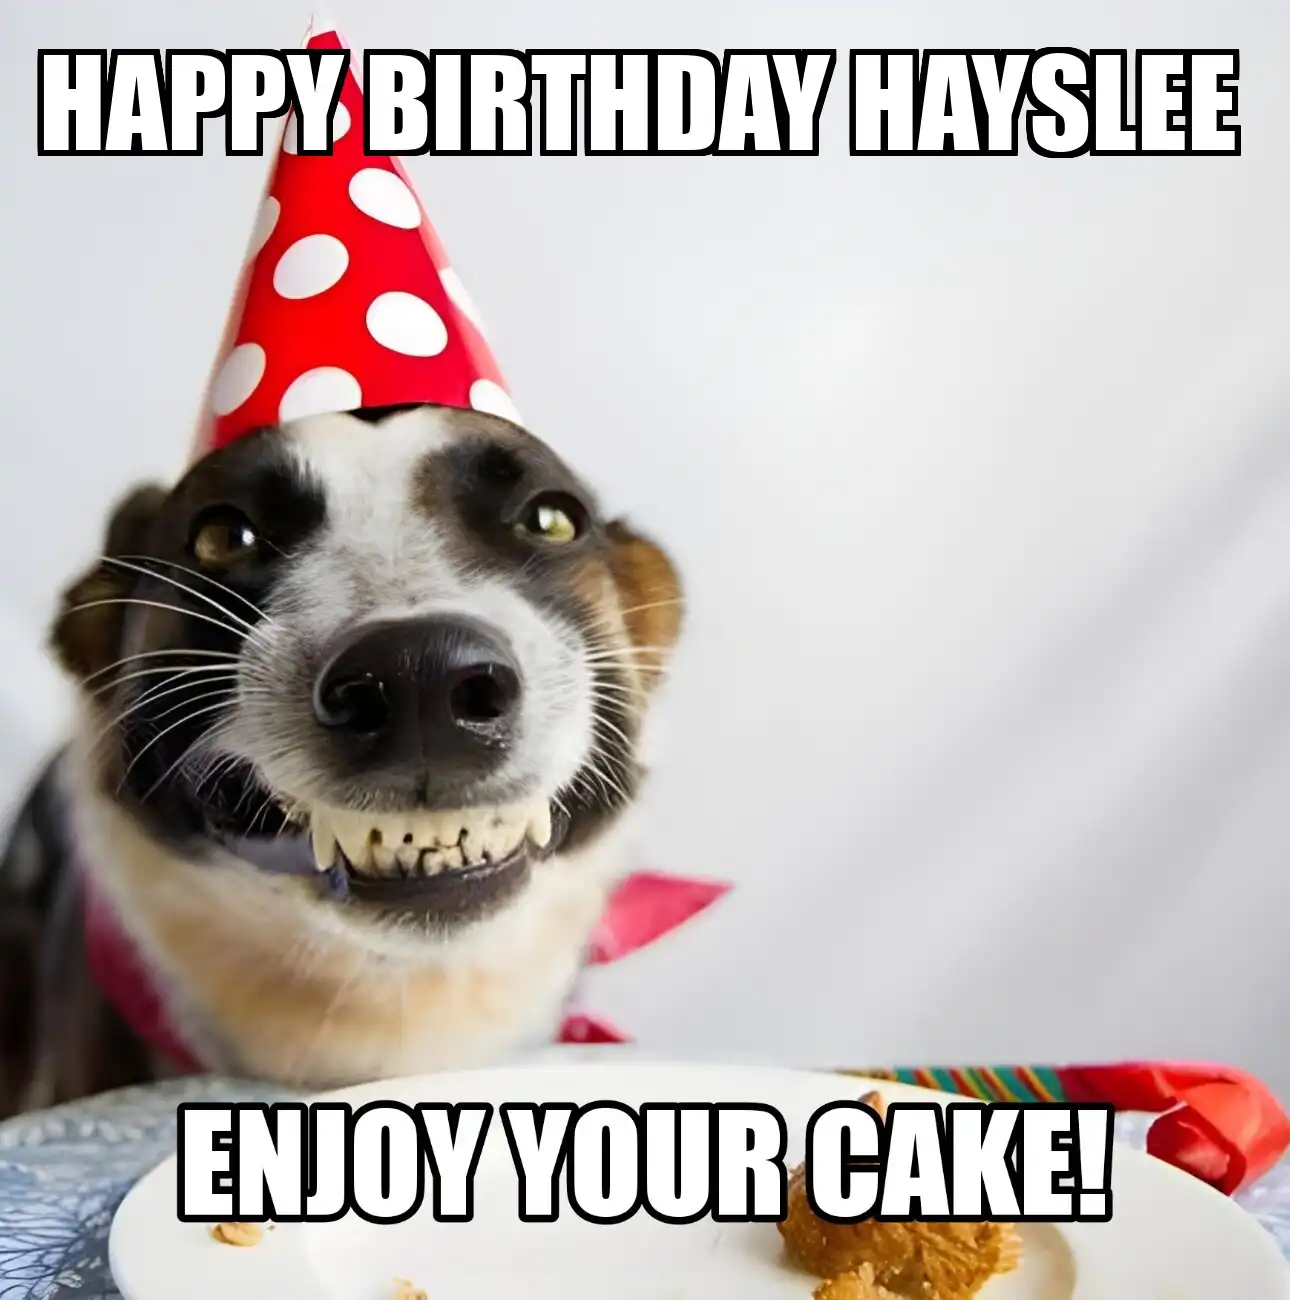 Happy Birthday Hayslee Enjoy Your Cake Dog Meme